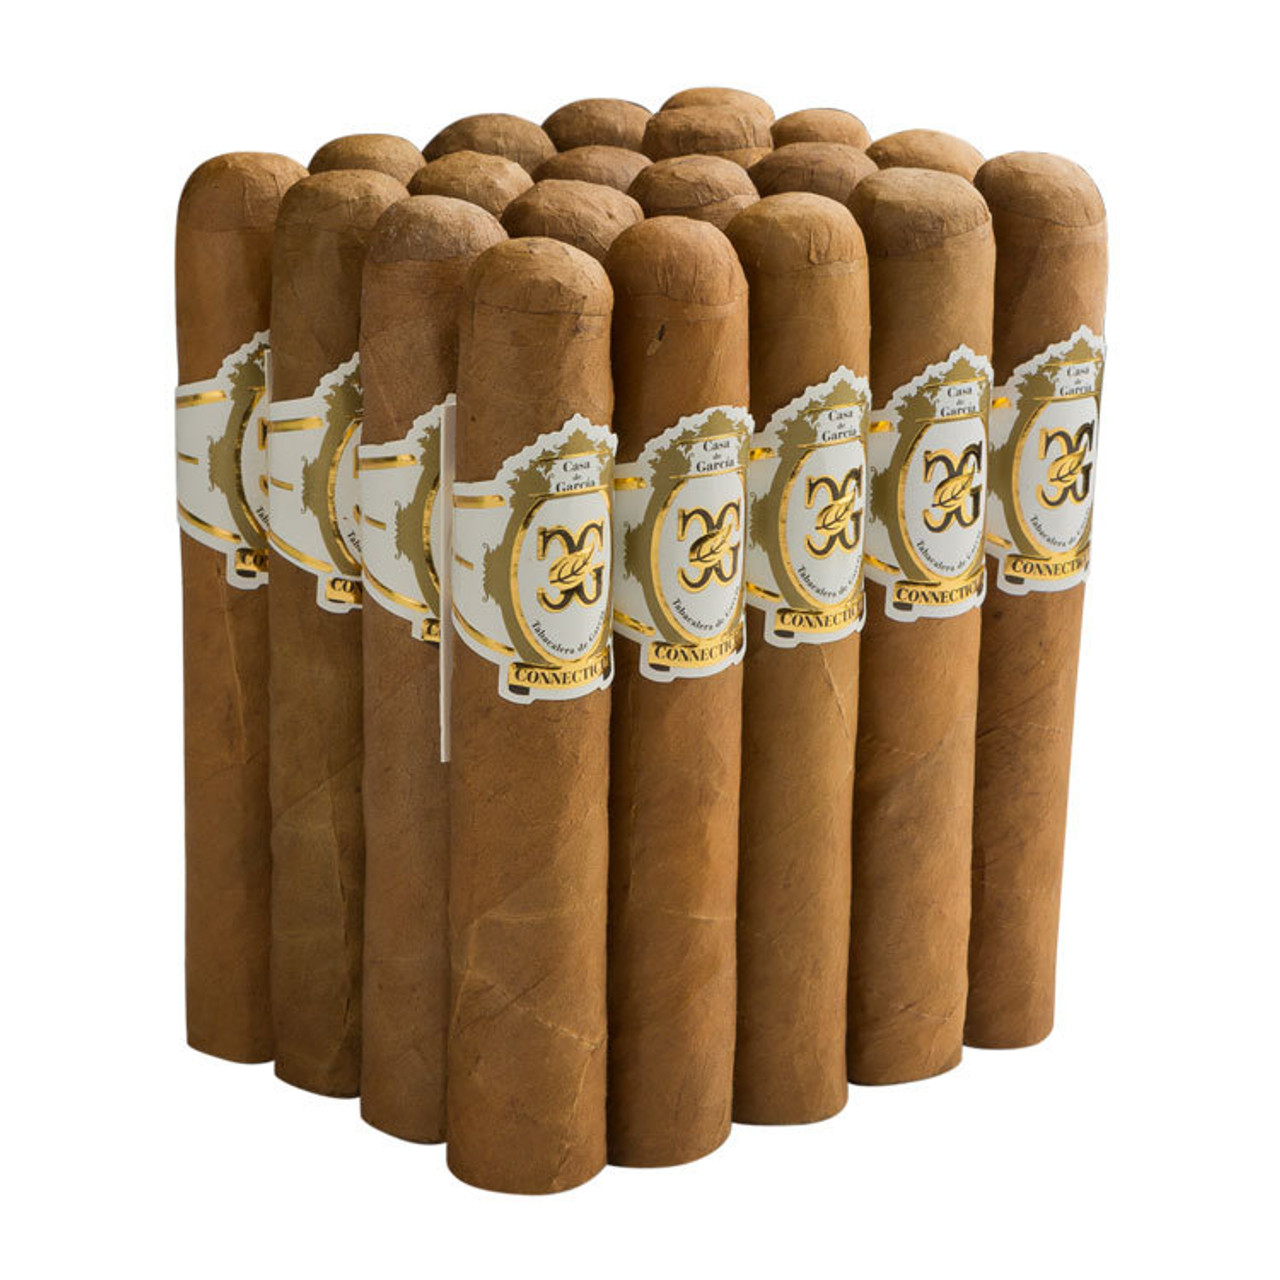 Casa de Garcia Connecticut  Robusto Cigars - 4.75 x 50 (Bundle of 20) *Box